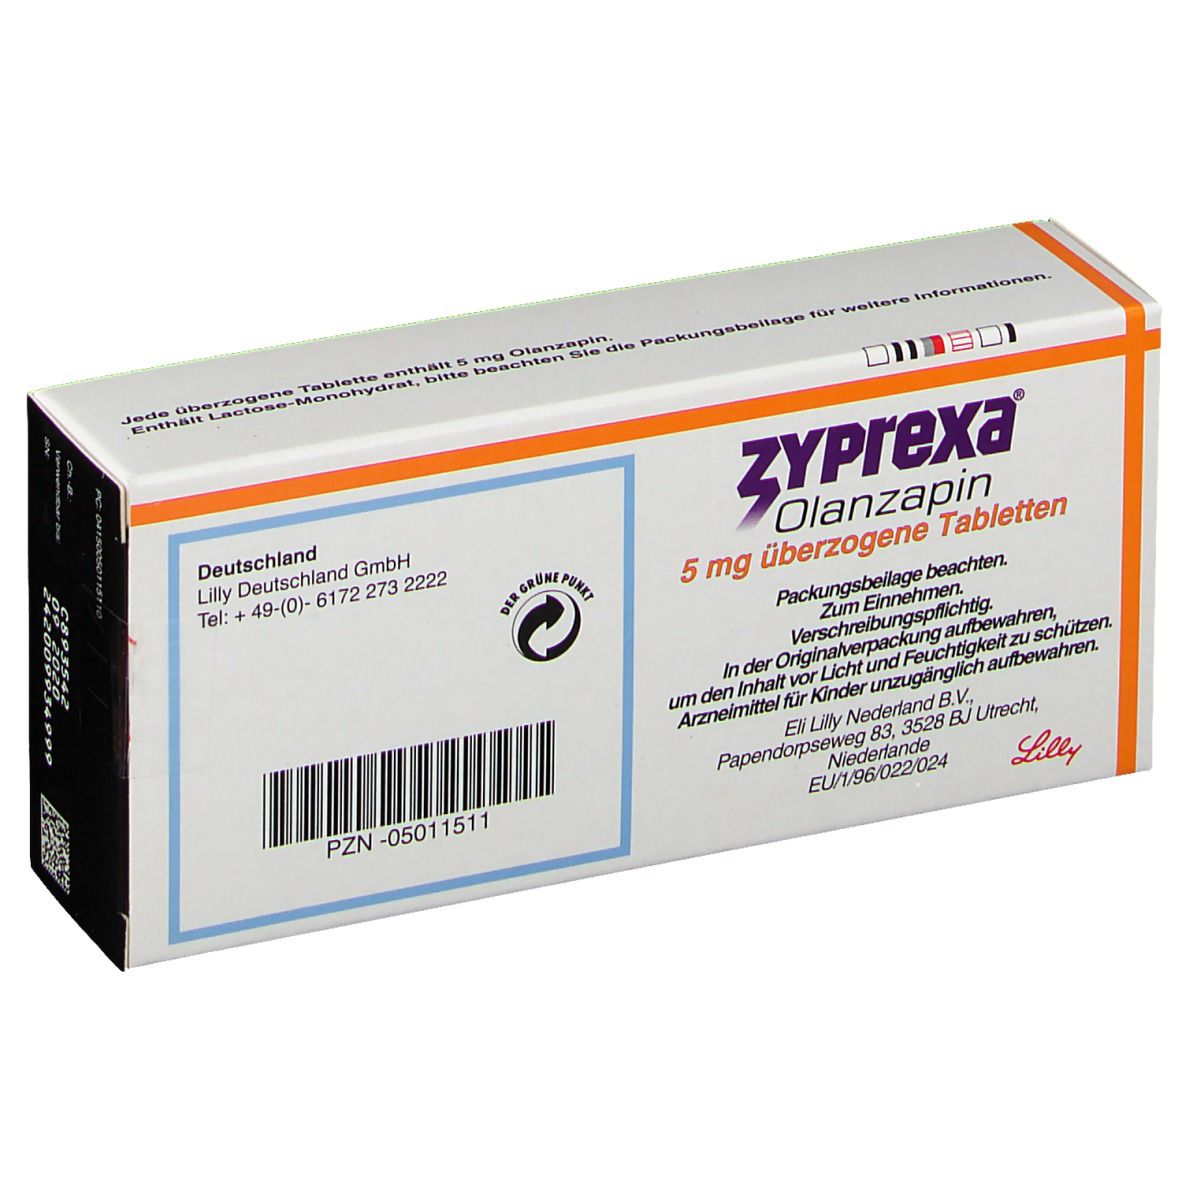 ZYPrexa® 5 mg